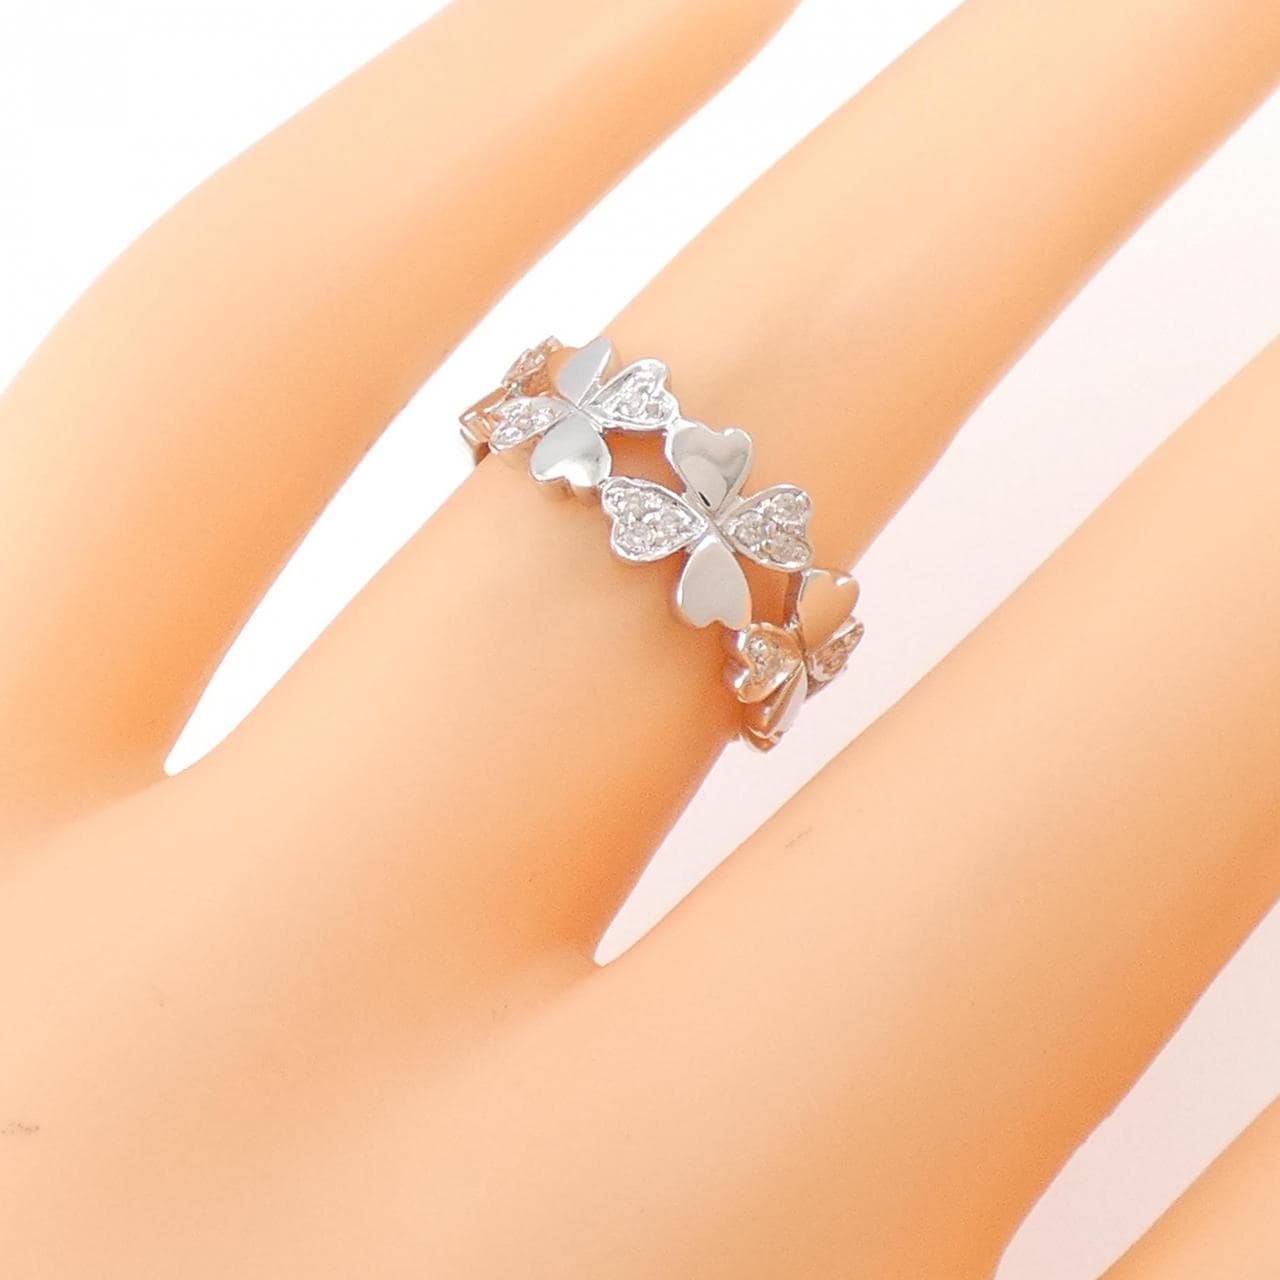 ファッションclover ring K18WG with diamonds